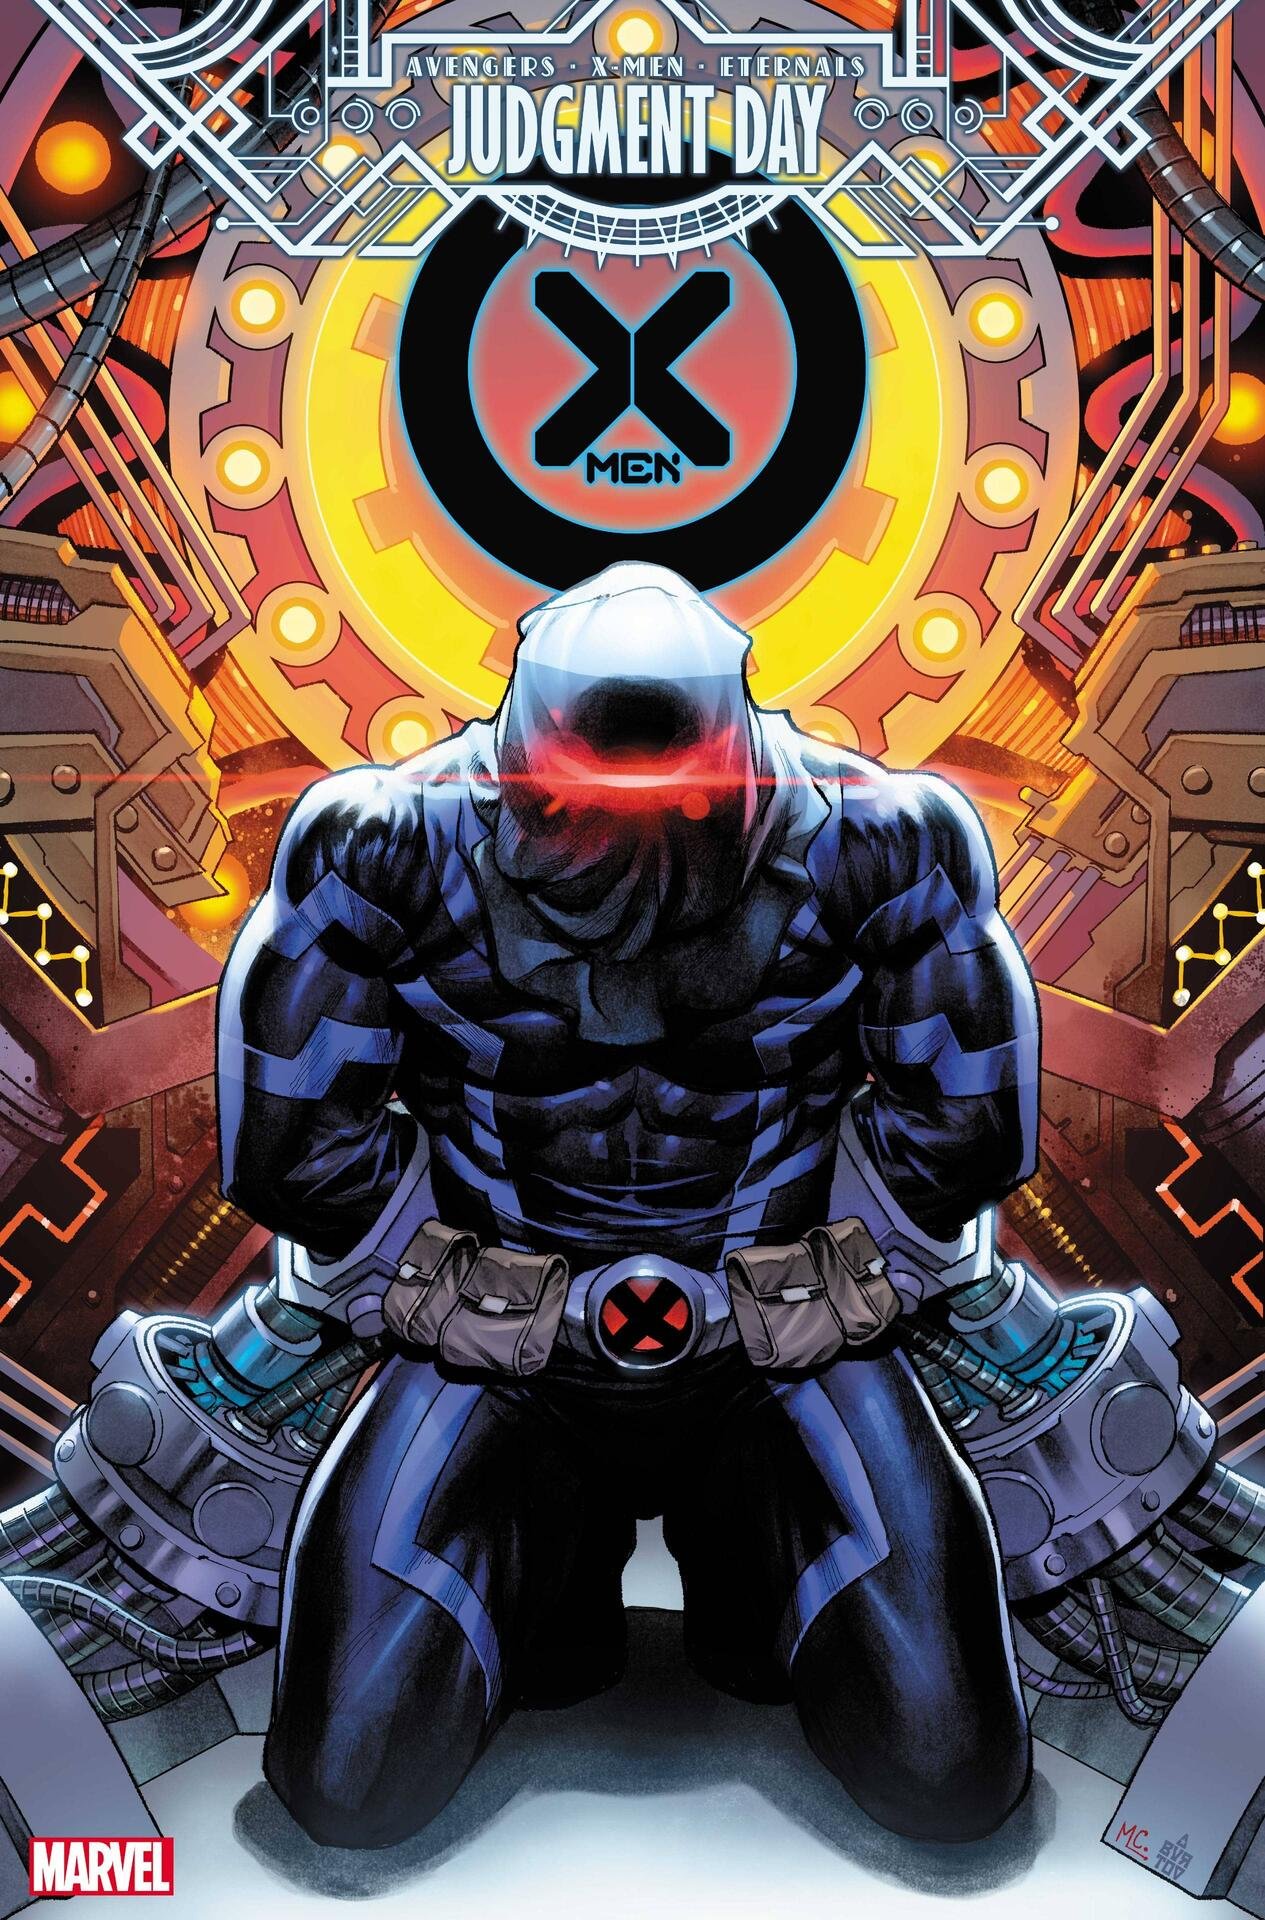 Cover di X-Men 14 di Martin Coccolo